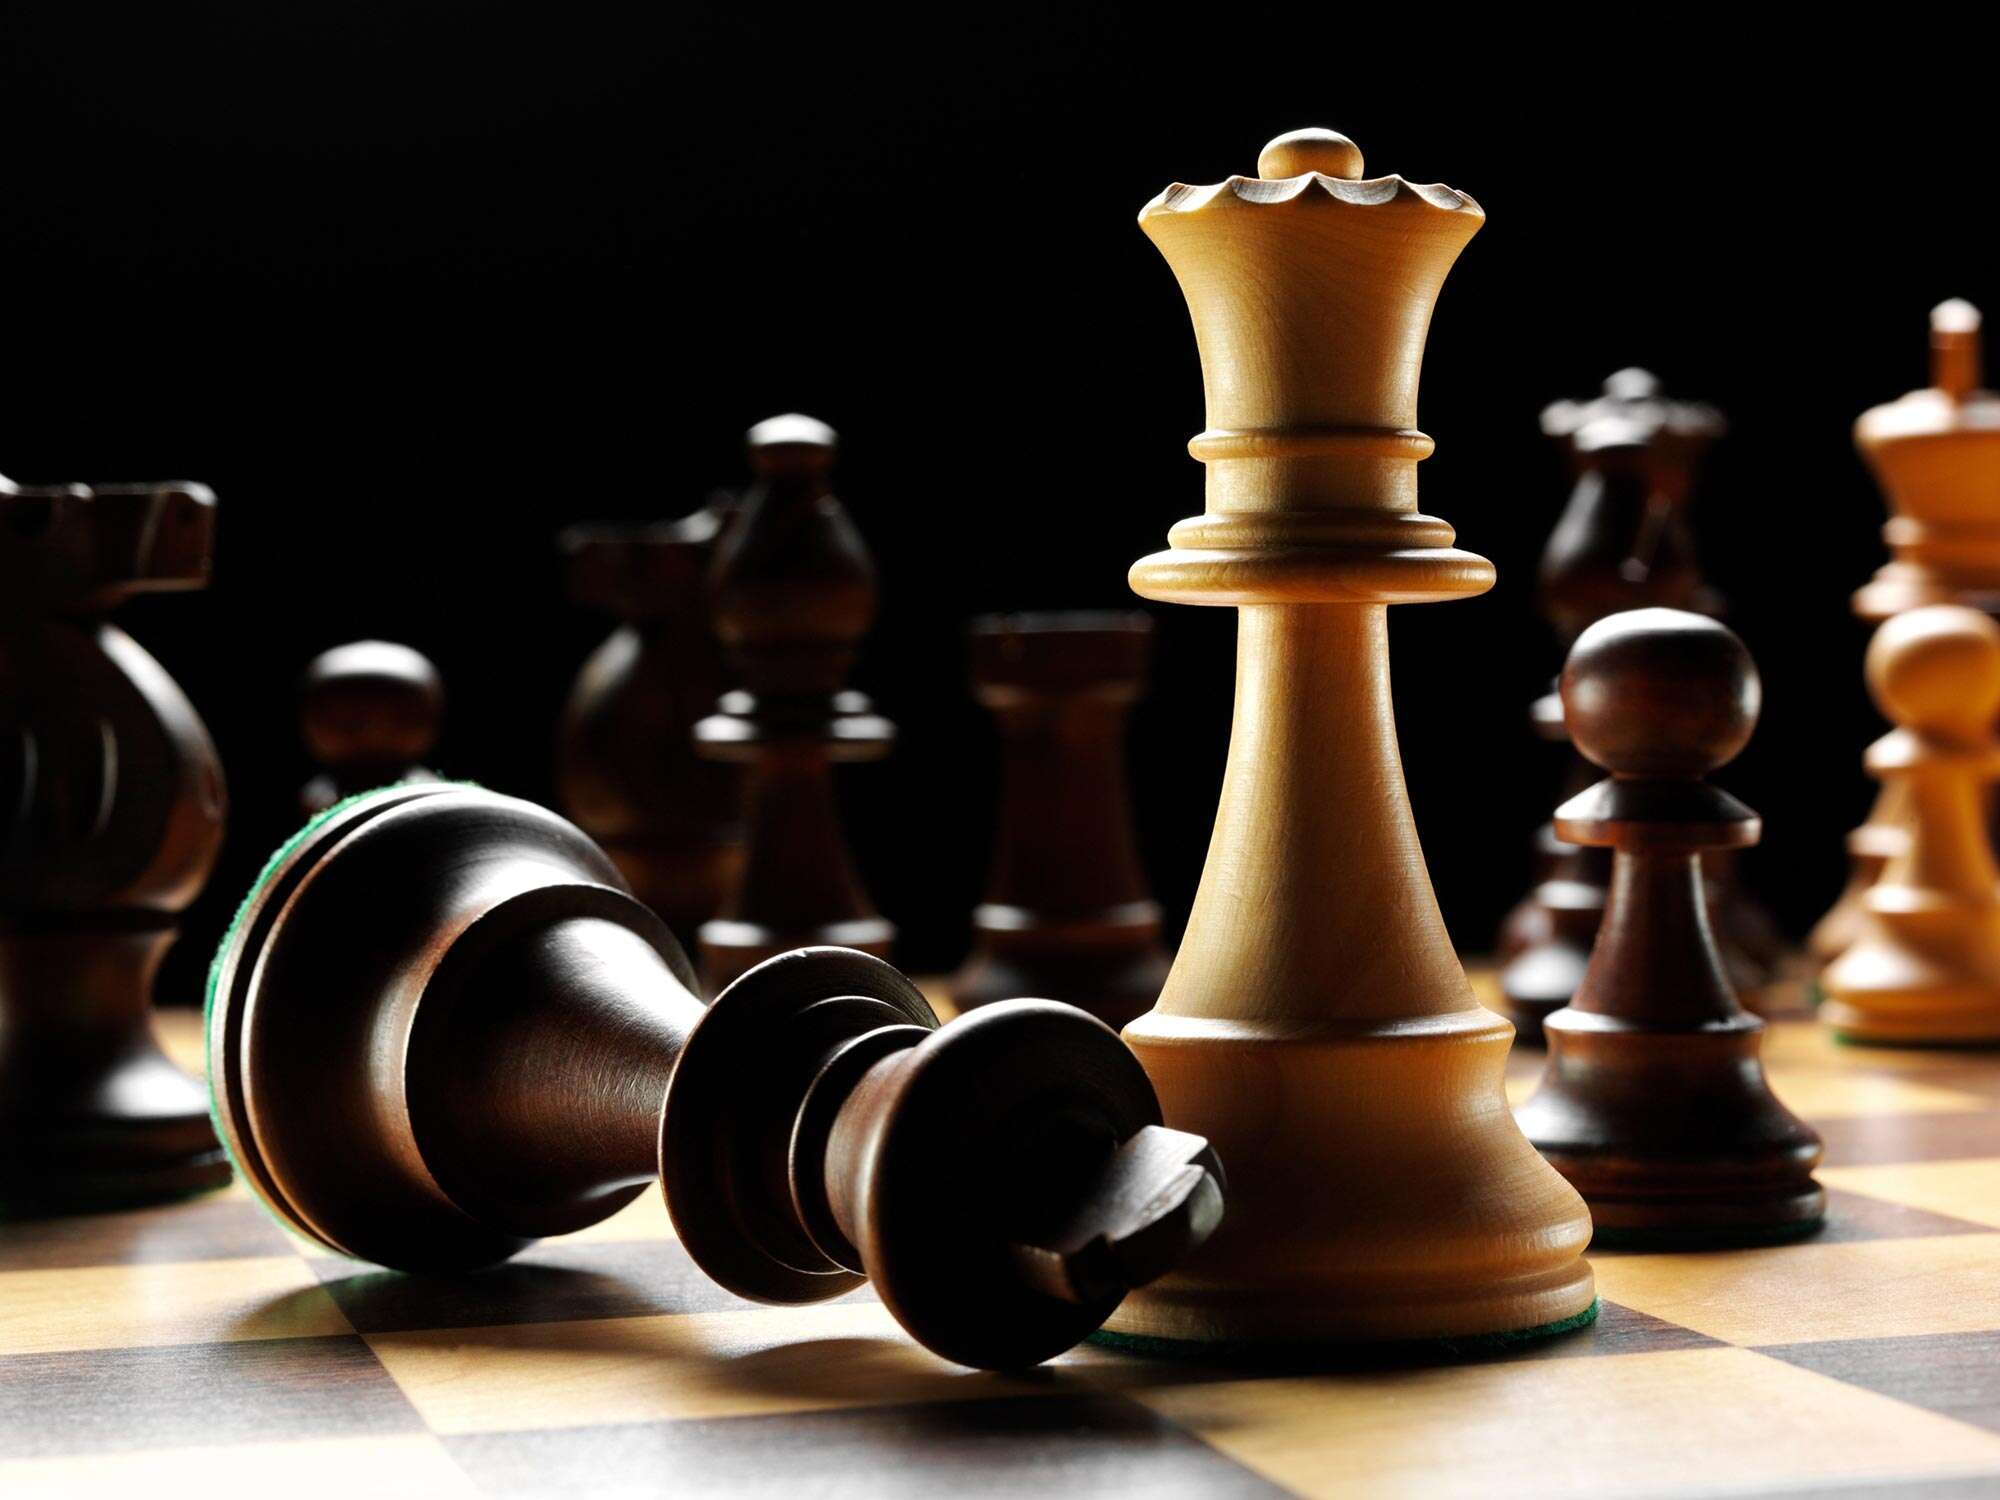 Brasileiro já venceu jogador de xadrez acusado de trapacear usando